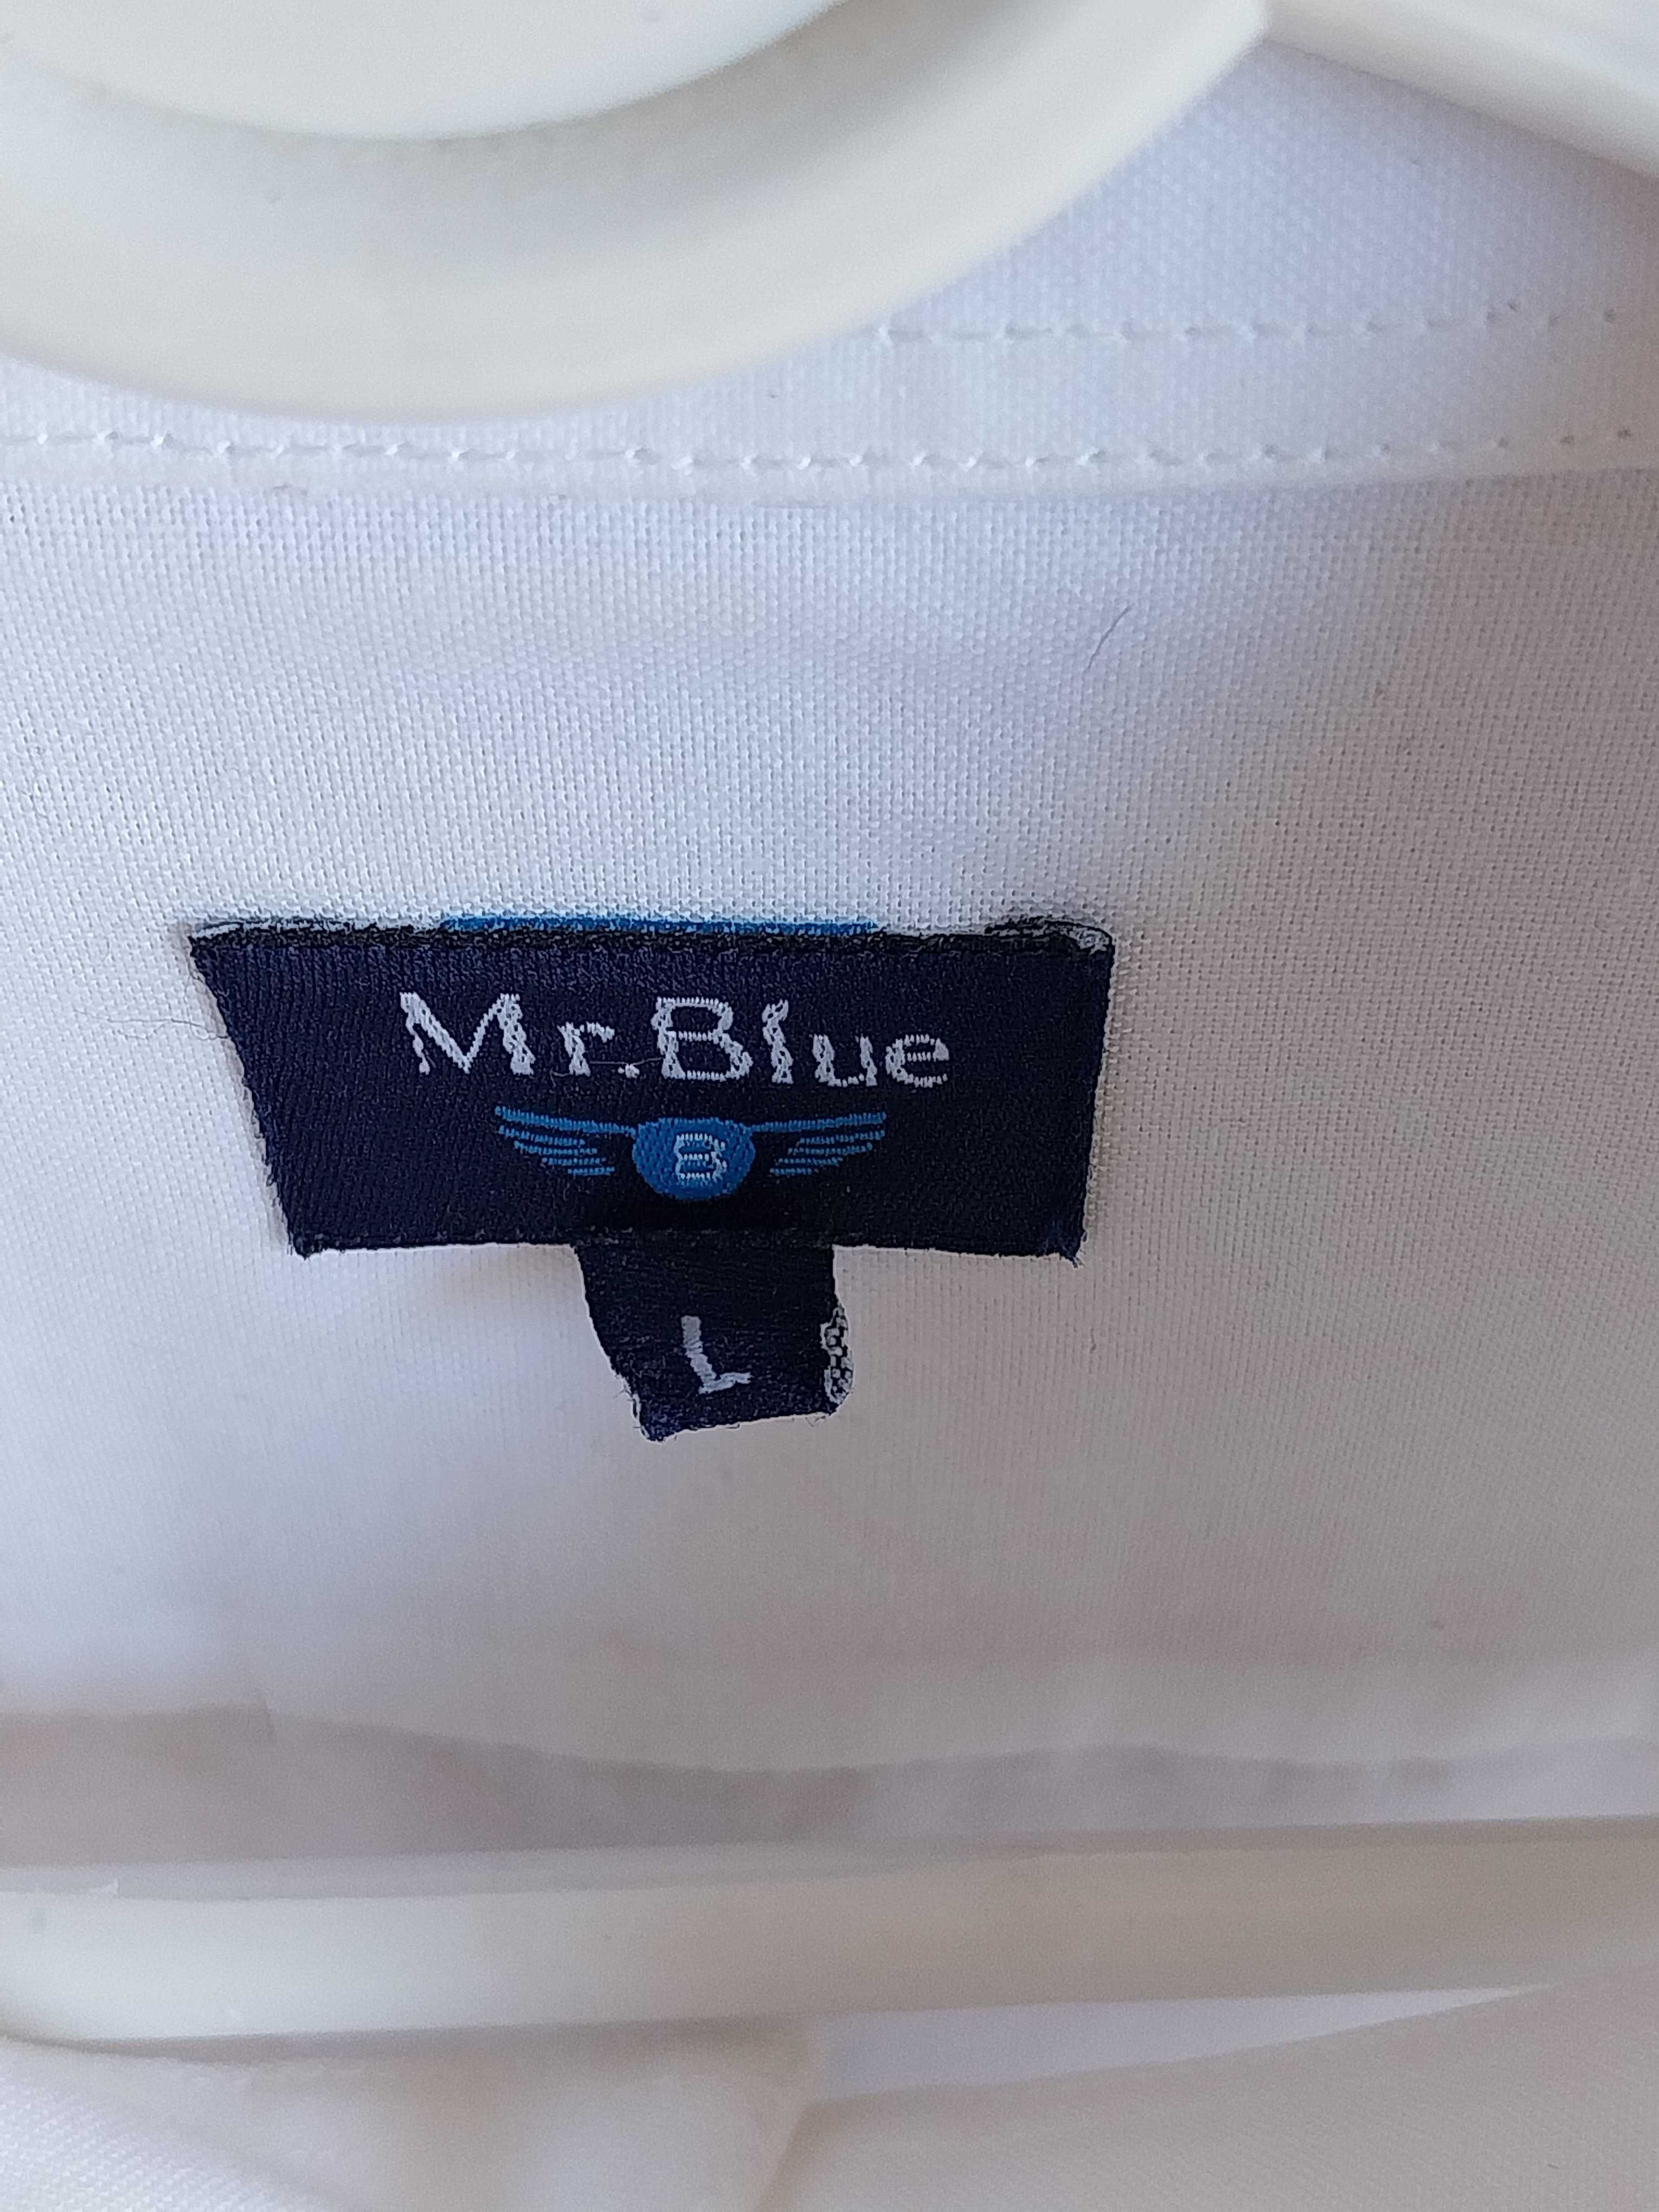 Camisa clássica MR Blue, tamanho L e cor branca